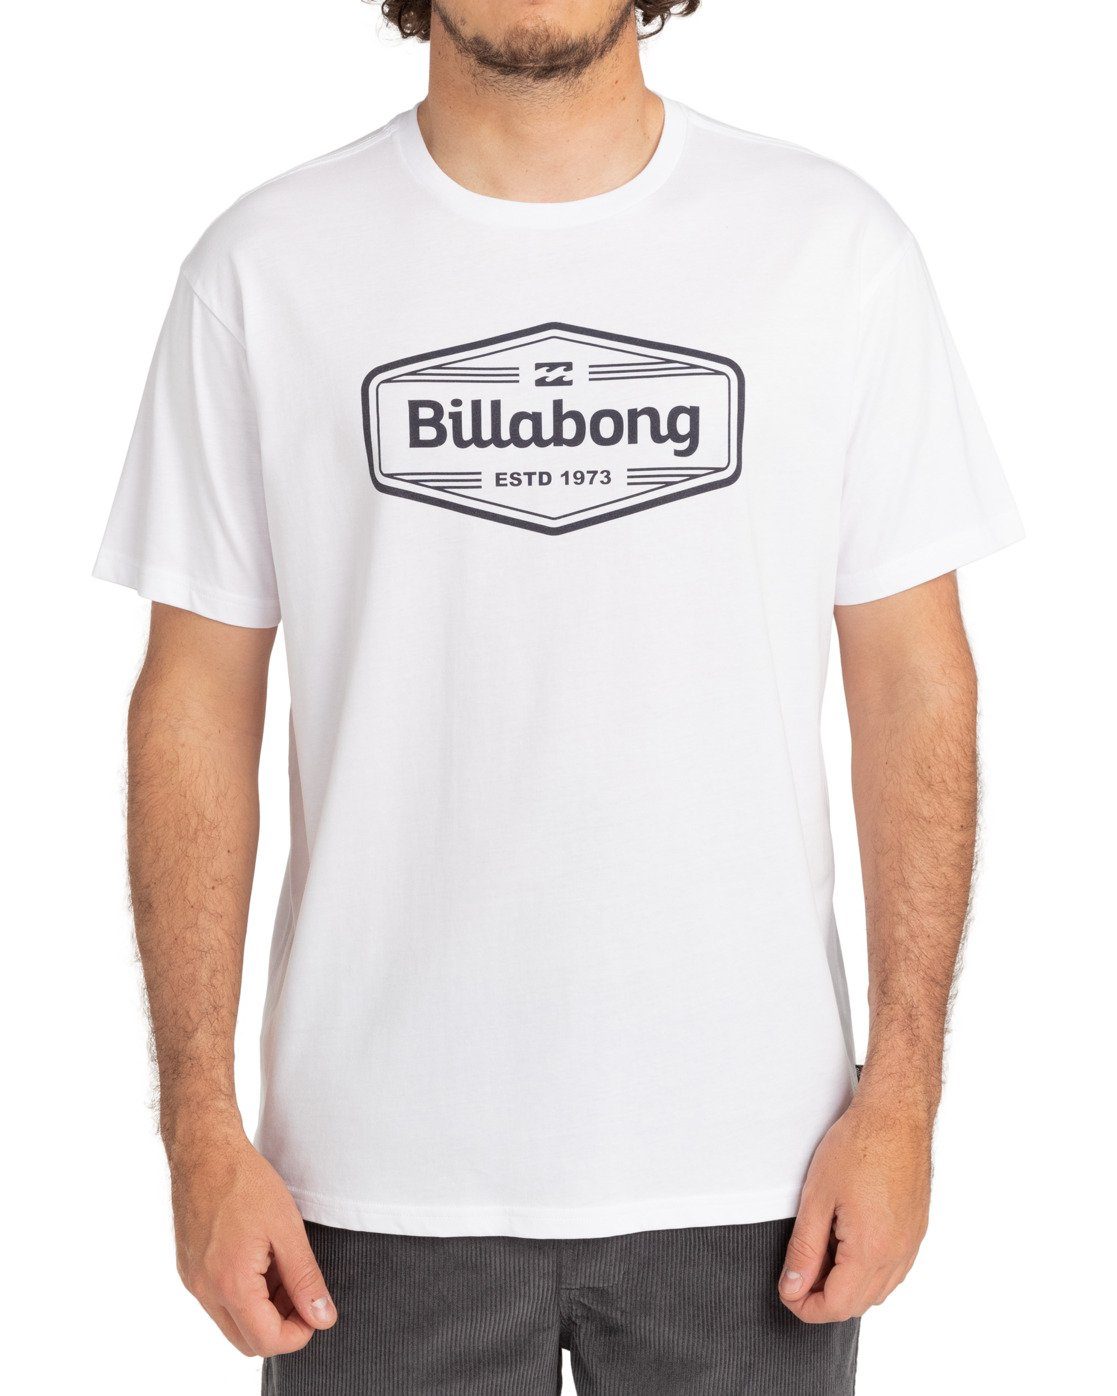 Billabong Trademark White T-Shirt